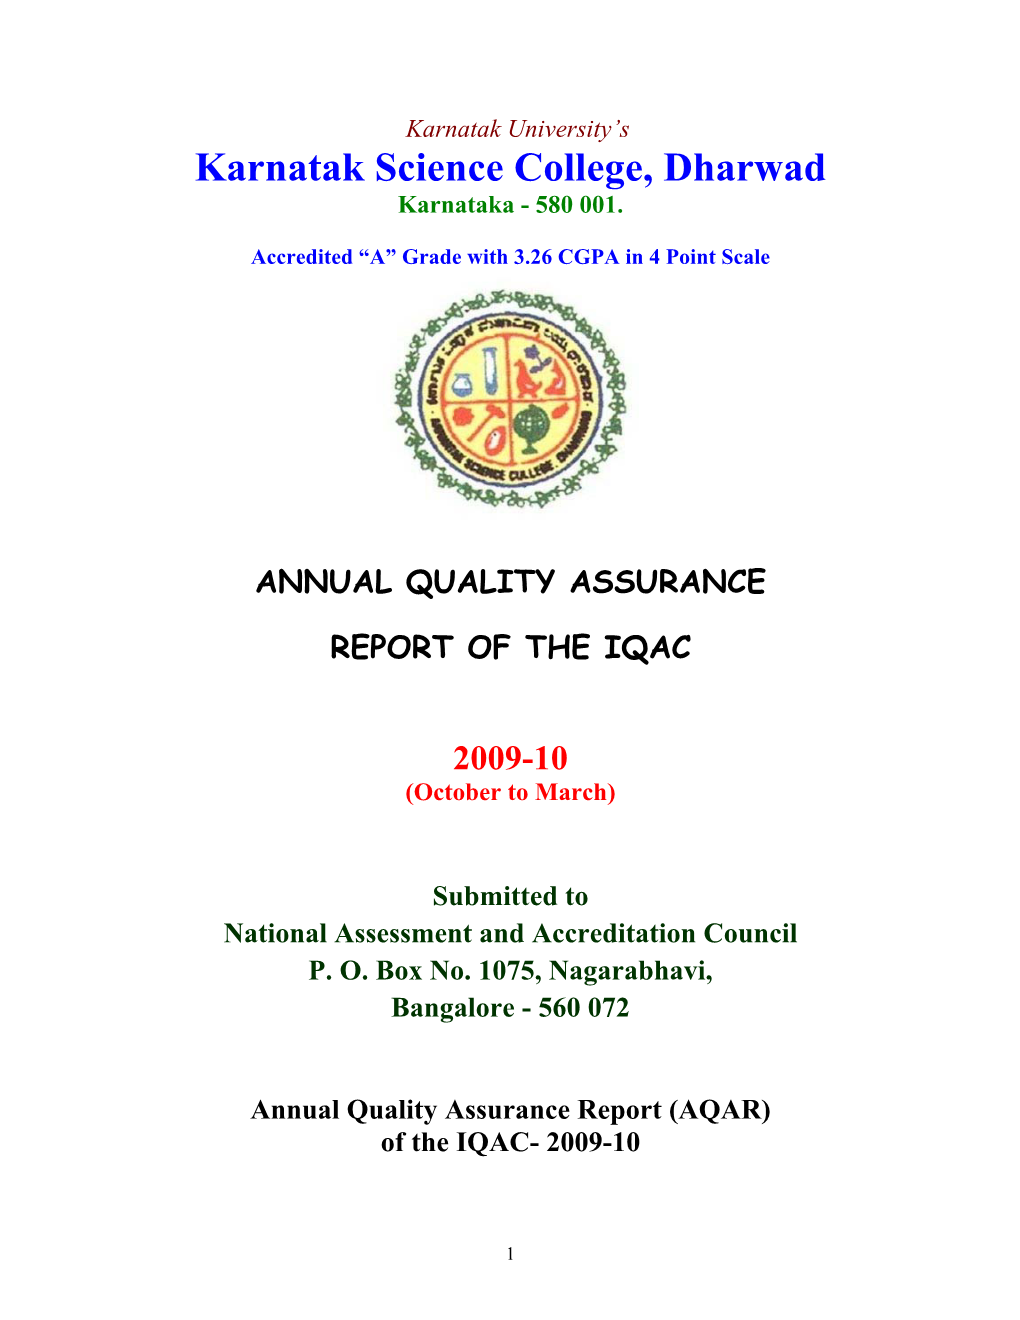 IQAC Report 2009-10